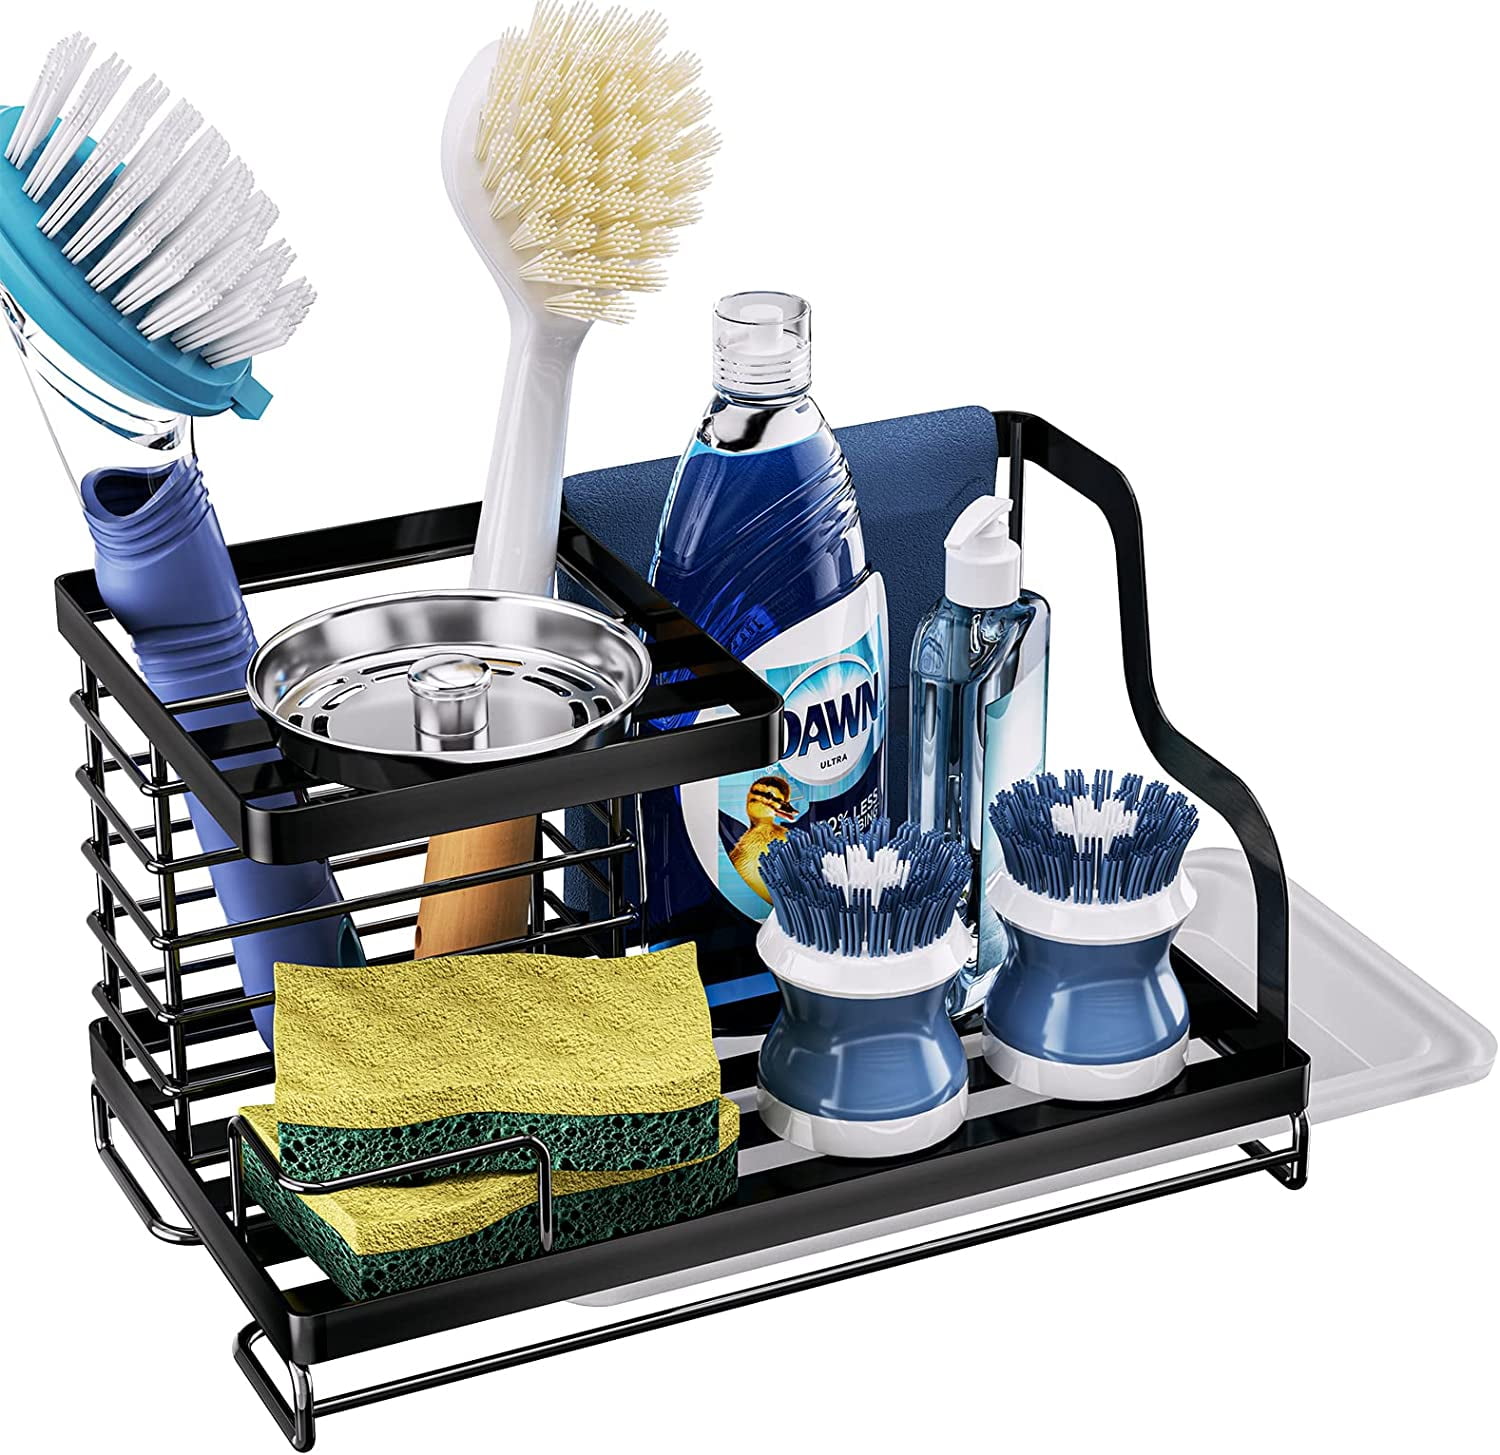 Easyinsmile kitchen sink caddy sponge holder scratcher holder cleaning brush  holder sink organizer(grey)